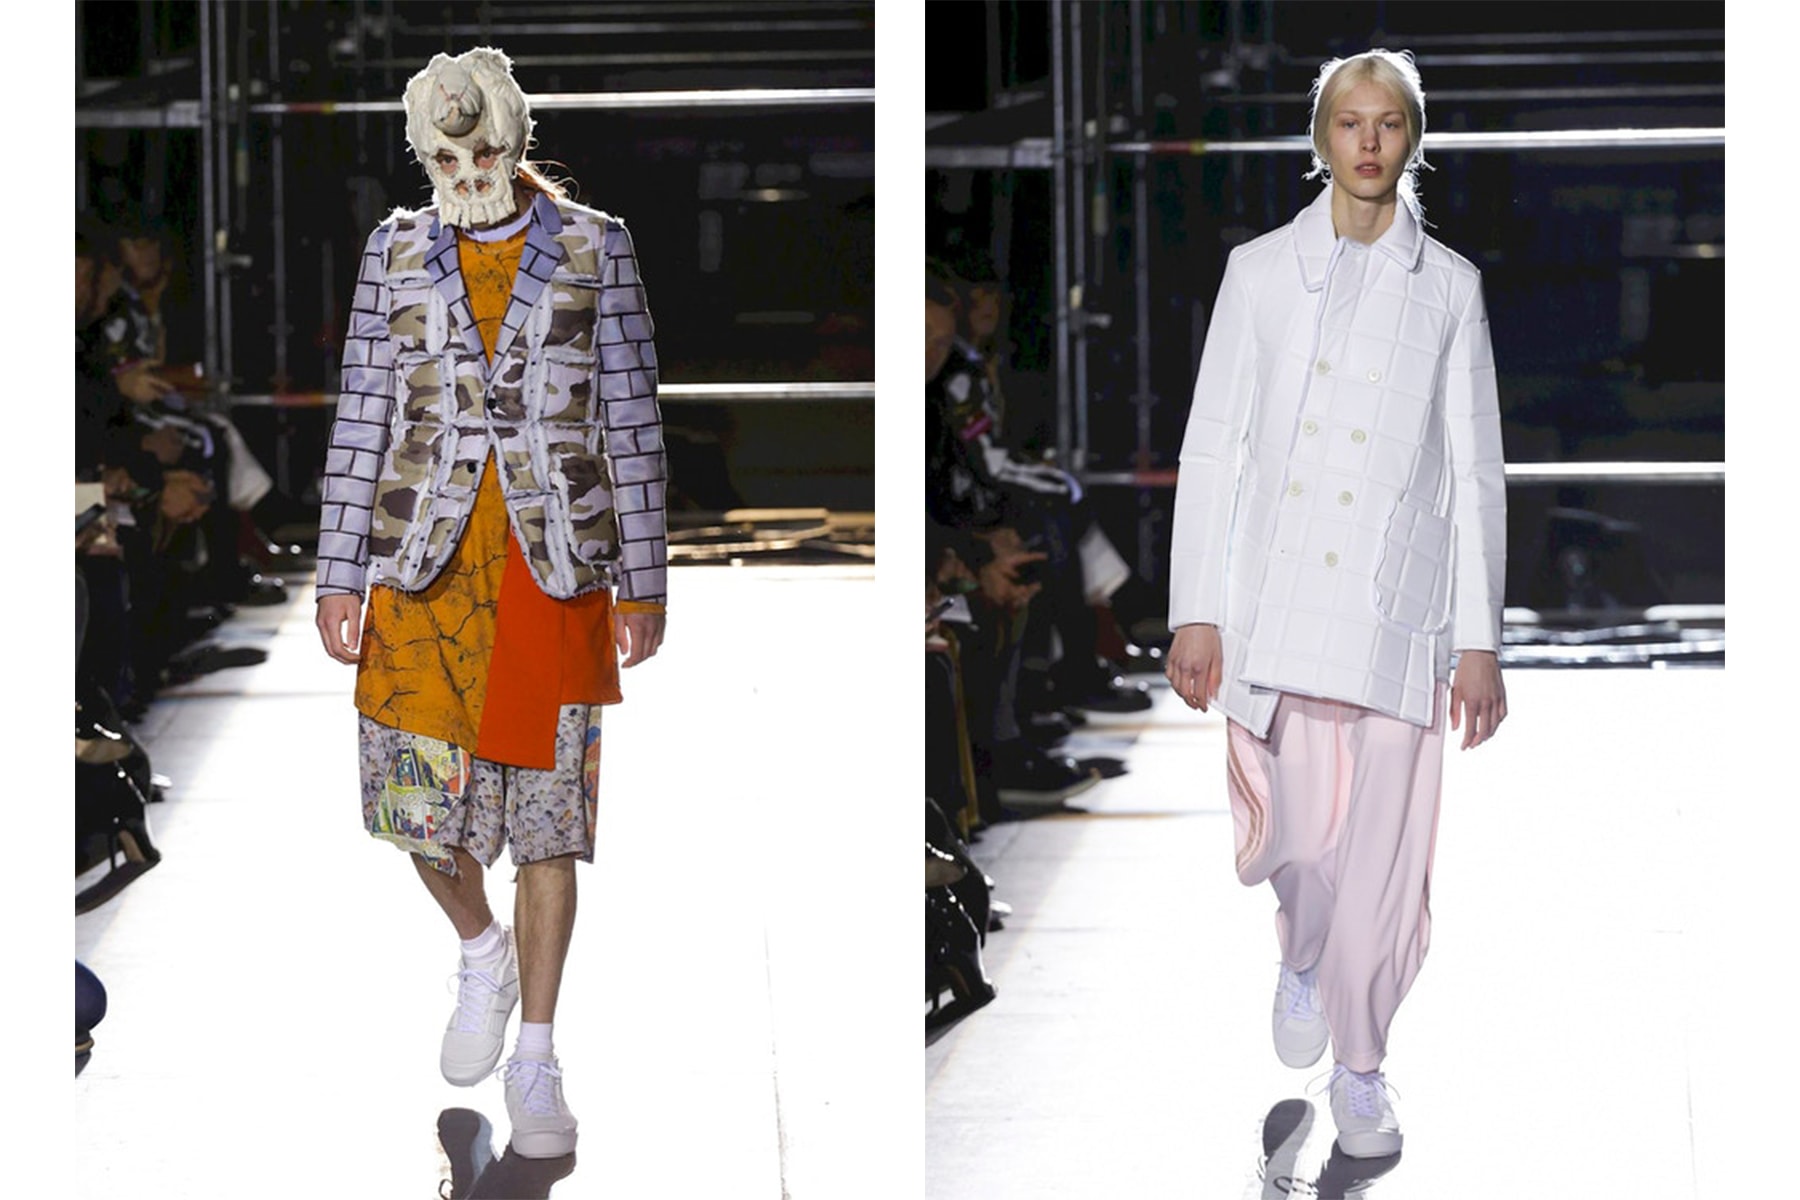 HYPEBEAST が選ぶ Paris Fashion Week: Men's 2018年秋冬ベストルック Day 4 〈Junya Watanabe MAN〉や〈COMME des GARÇONS HOMME PLUS〉の登場に加え、この日は非公式スケジュールで〈Vetements〉も単独ランウェイを開催  2018年秋冬のパリファッションウィーク・メンズ4日目は、いよいよ後半戦に突入。この日の先陣を切ったのは、日本が誇るメンズウェアブランド〈Junya Watanabe MAN（ジュンヤ ワタナベ マン）〉。「株式会社コムデギャルソン」の取締役副社長を兼任するデザイナー・渡辺淳弥は、今季のパートナーに〈The North Face（ザ・ノース・フェイス）〉、〈Canada Goose（カナダ グース）〉、〈Karrimor（カリマー）〉といったアウトドアの名門を招聘。また、この日は〈COMME des GARÇONS HOMME PLUS（コム デ ギャルソン・オム プリュス）〉も登場し、不可思議なテキスタイルと様変わりな被り物で観衆を呆気に取ったほか、スニーカーヘッズたちの間では〈Nike ACG（ナイキ ACG）〉とのコラボモデルに一際注目が集まった。  さらに、公式スケジュールではないものの、この日は〈Vetements（ヴェトモン）〉も単独でランウェイを開催。ストリート＆オーバーサイズというDemna Gvasalia（デムナ・ヴァザリア）の真骨頂の中でも、最新コレクションではスカーフと壊滅的なミリタリーパンツの提案が非常に印象的に映った。  『HYPEBEAST』編集部の独断と偏見でピックアップした4日目のベストルックは、上のフォトギャラリーから。あわせて、数あるランウェイをハイライト形式でまとめた2018年秋冬シーズンの各都市の日別ベストルックは、以下からご確認を。